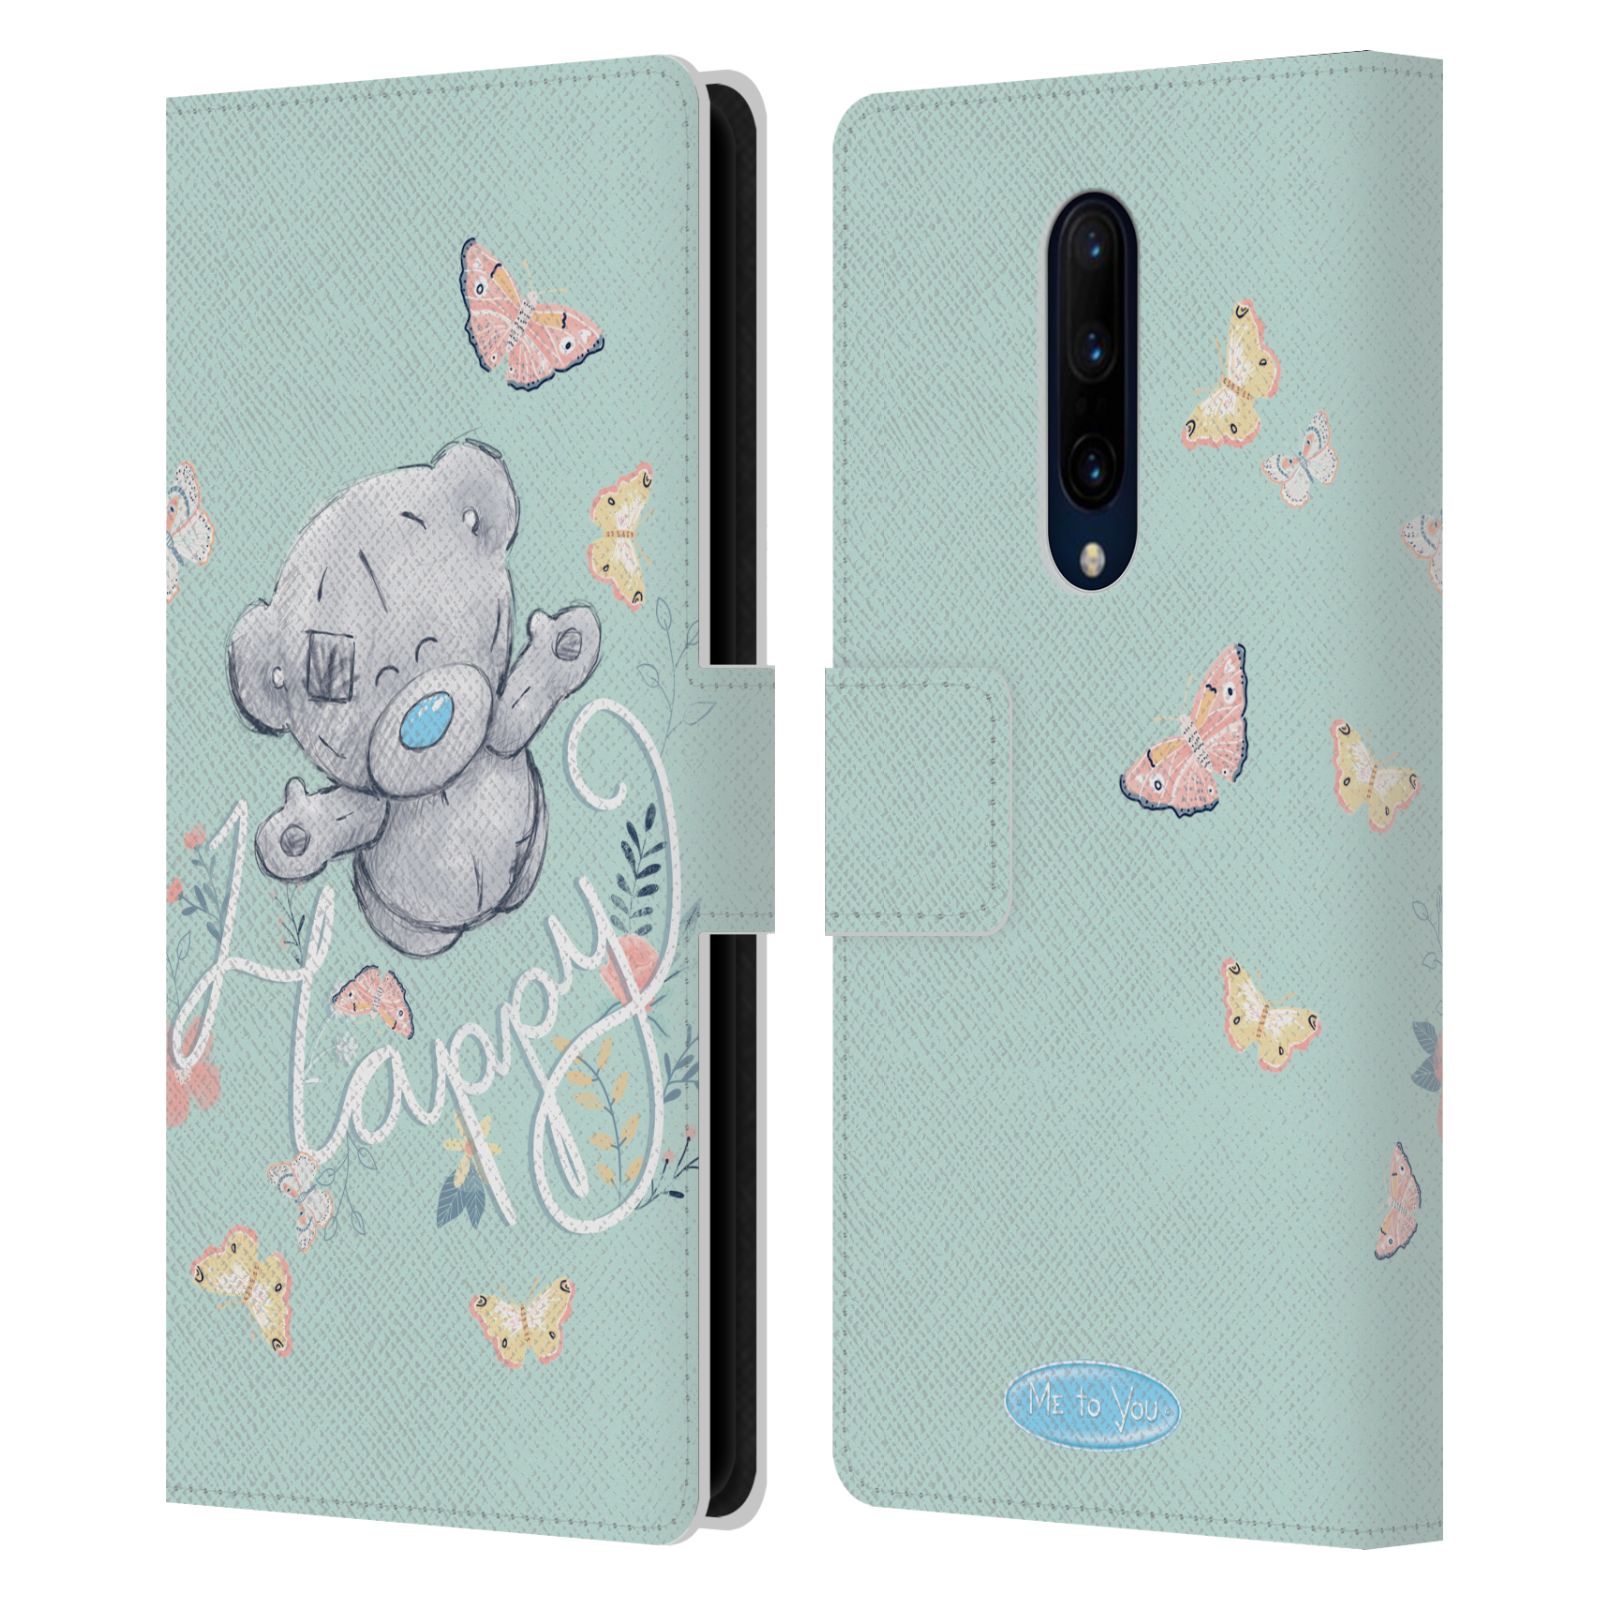 Pouzdro na mobil OnePlus 7 PRO  - HEAD CASE - Me To You - Medvídek na louce s motýlkem